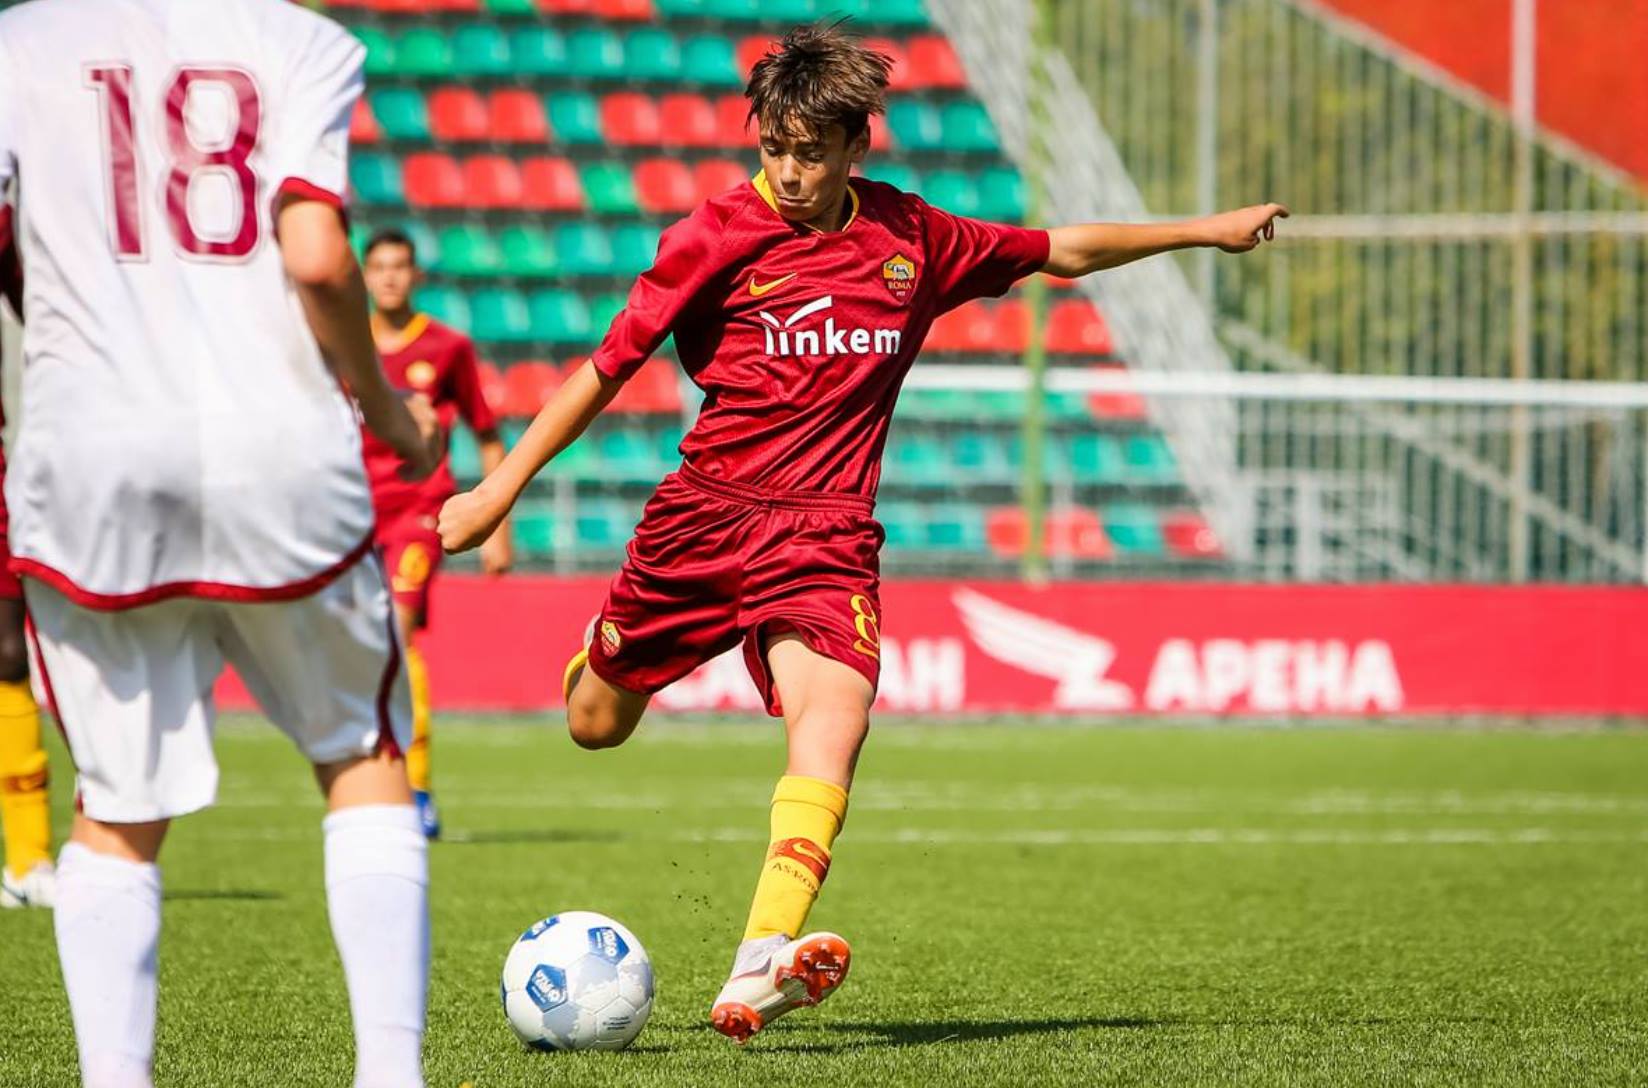 AS Roma U15 – UTLC CUP – Moscow (RU) 2018